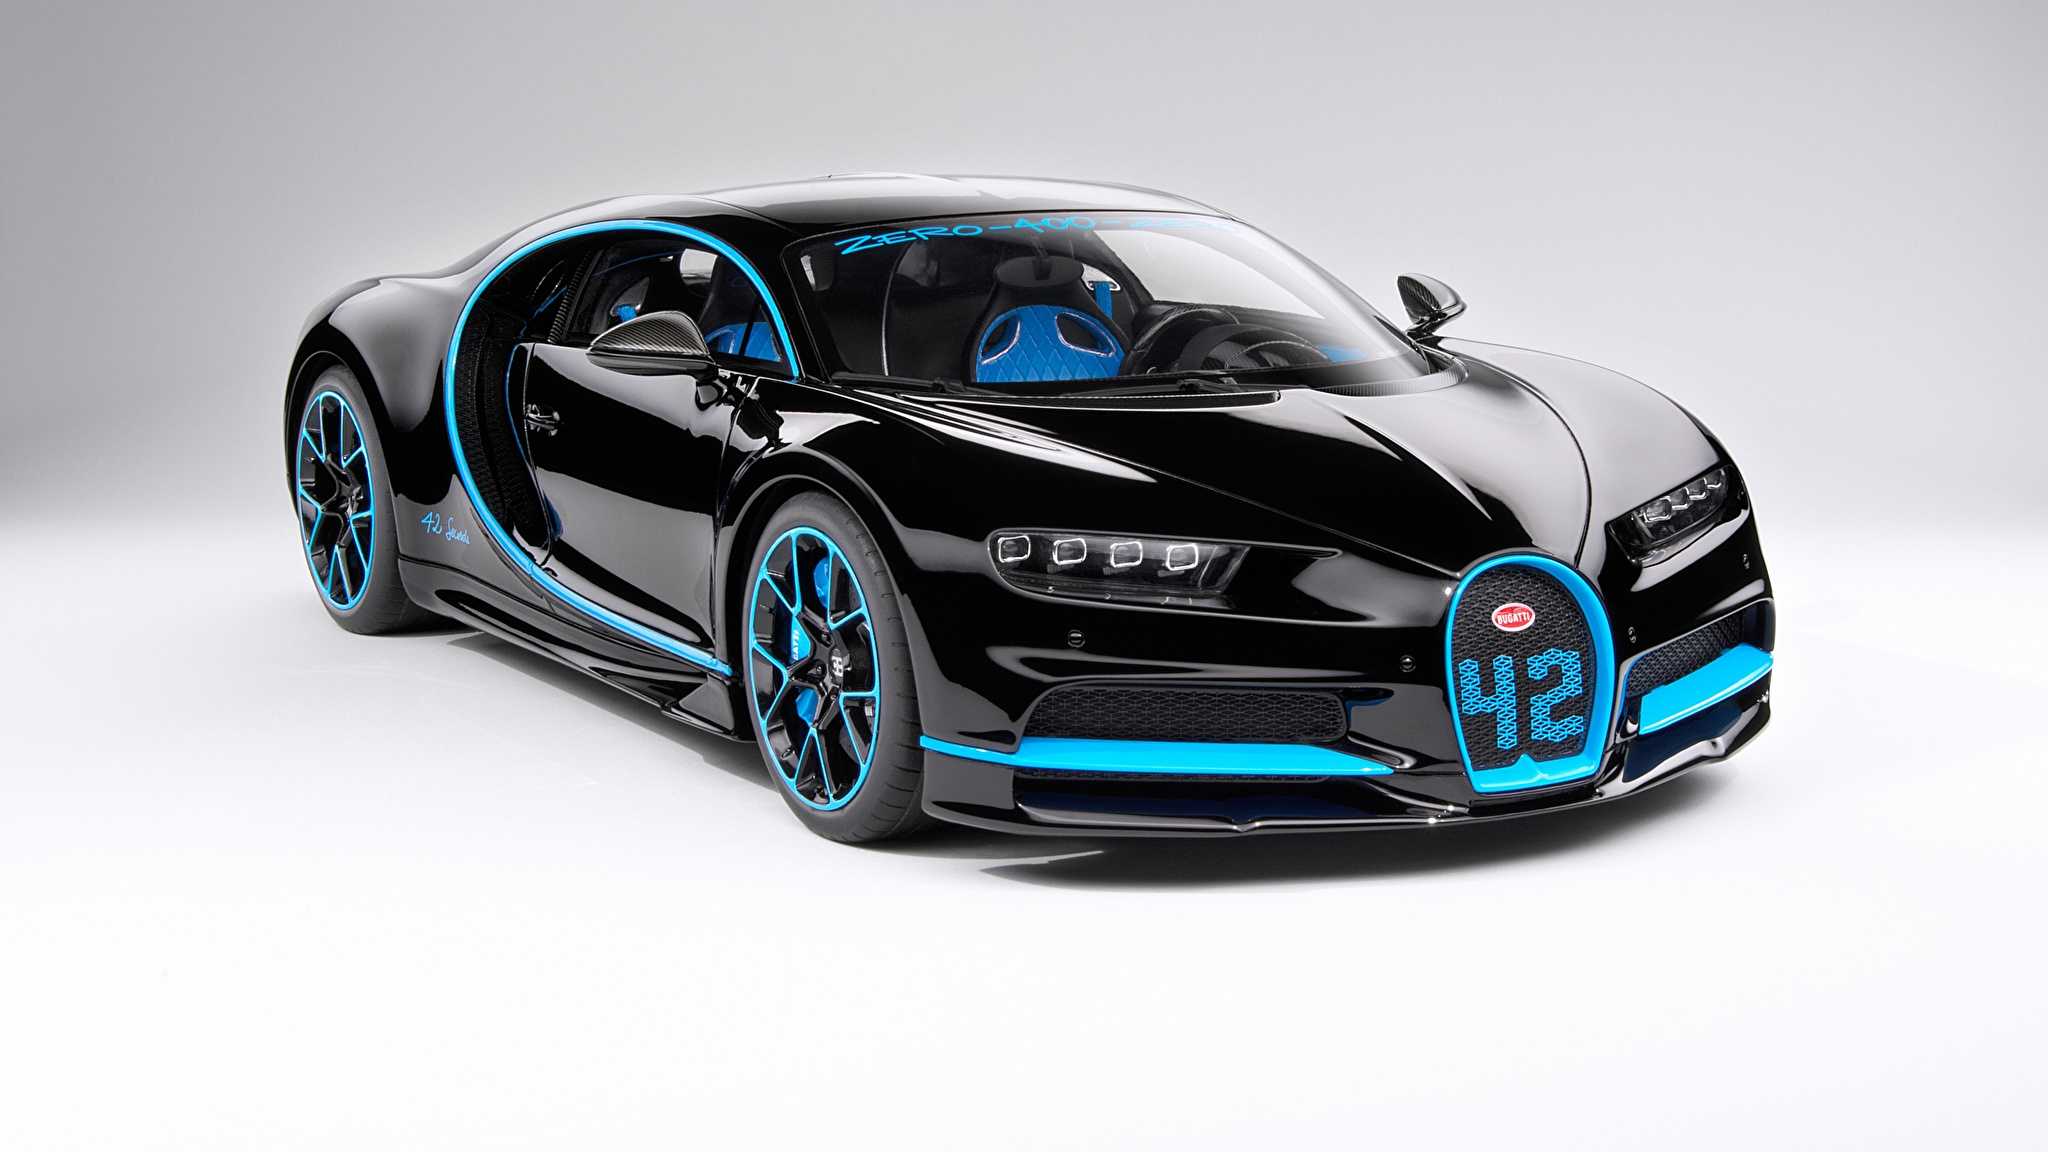 Обзор и характеристики новейшего гиперкара Chiron от Bugatti Его достоинства, недостатки, отзывы первых владельцев и цена Шерона в России в 2018-2019 году